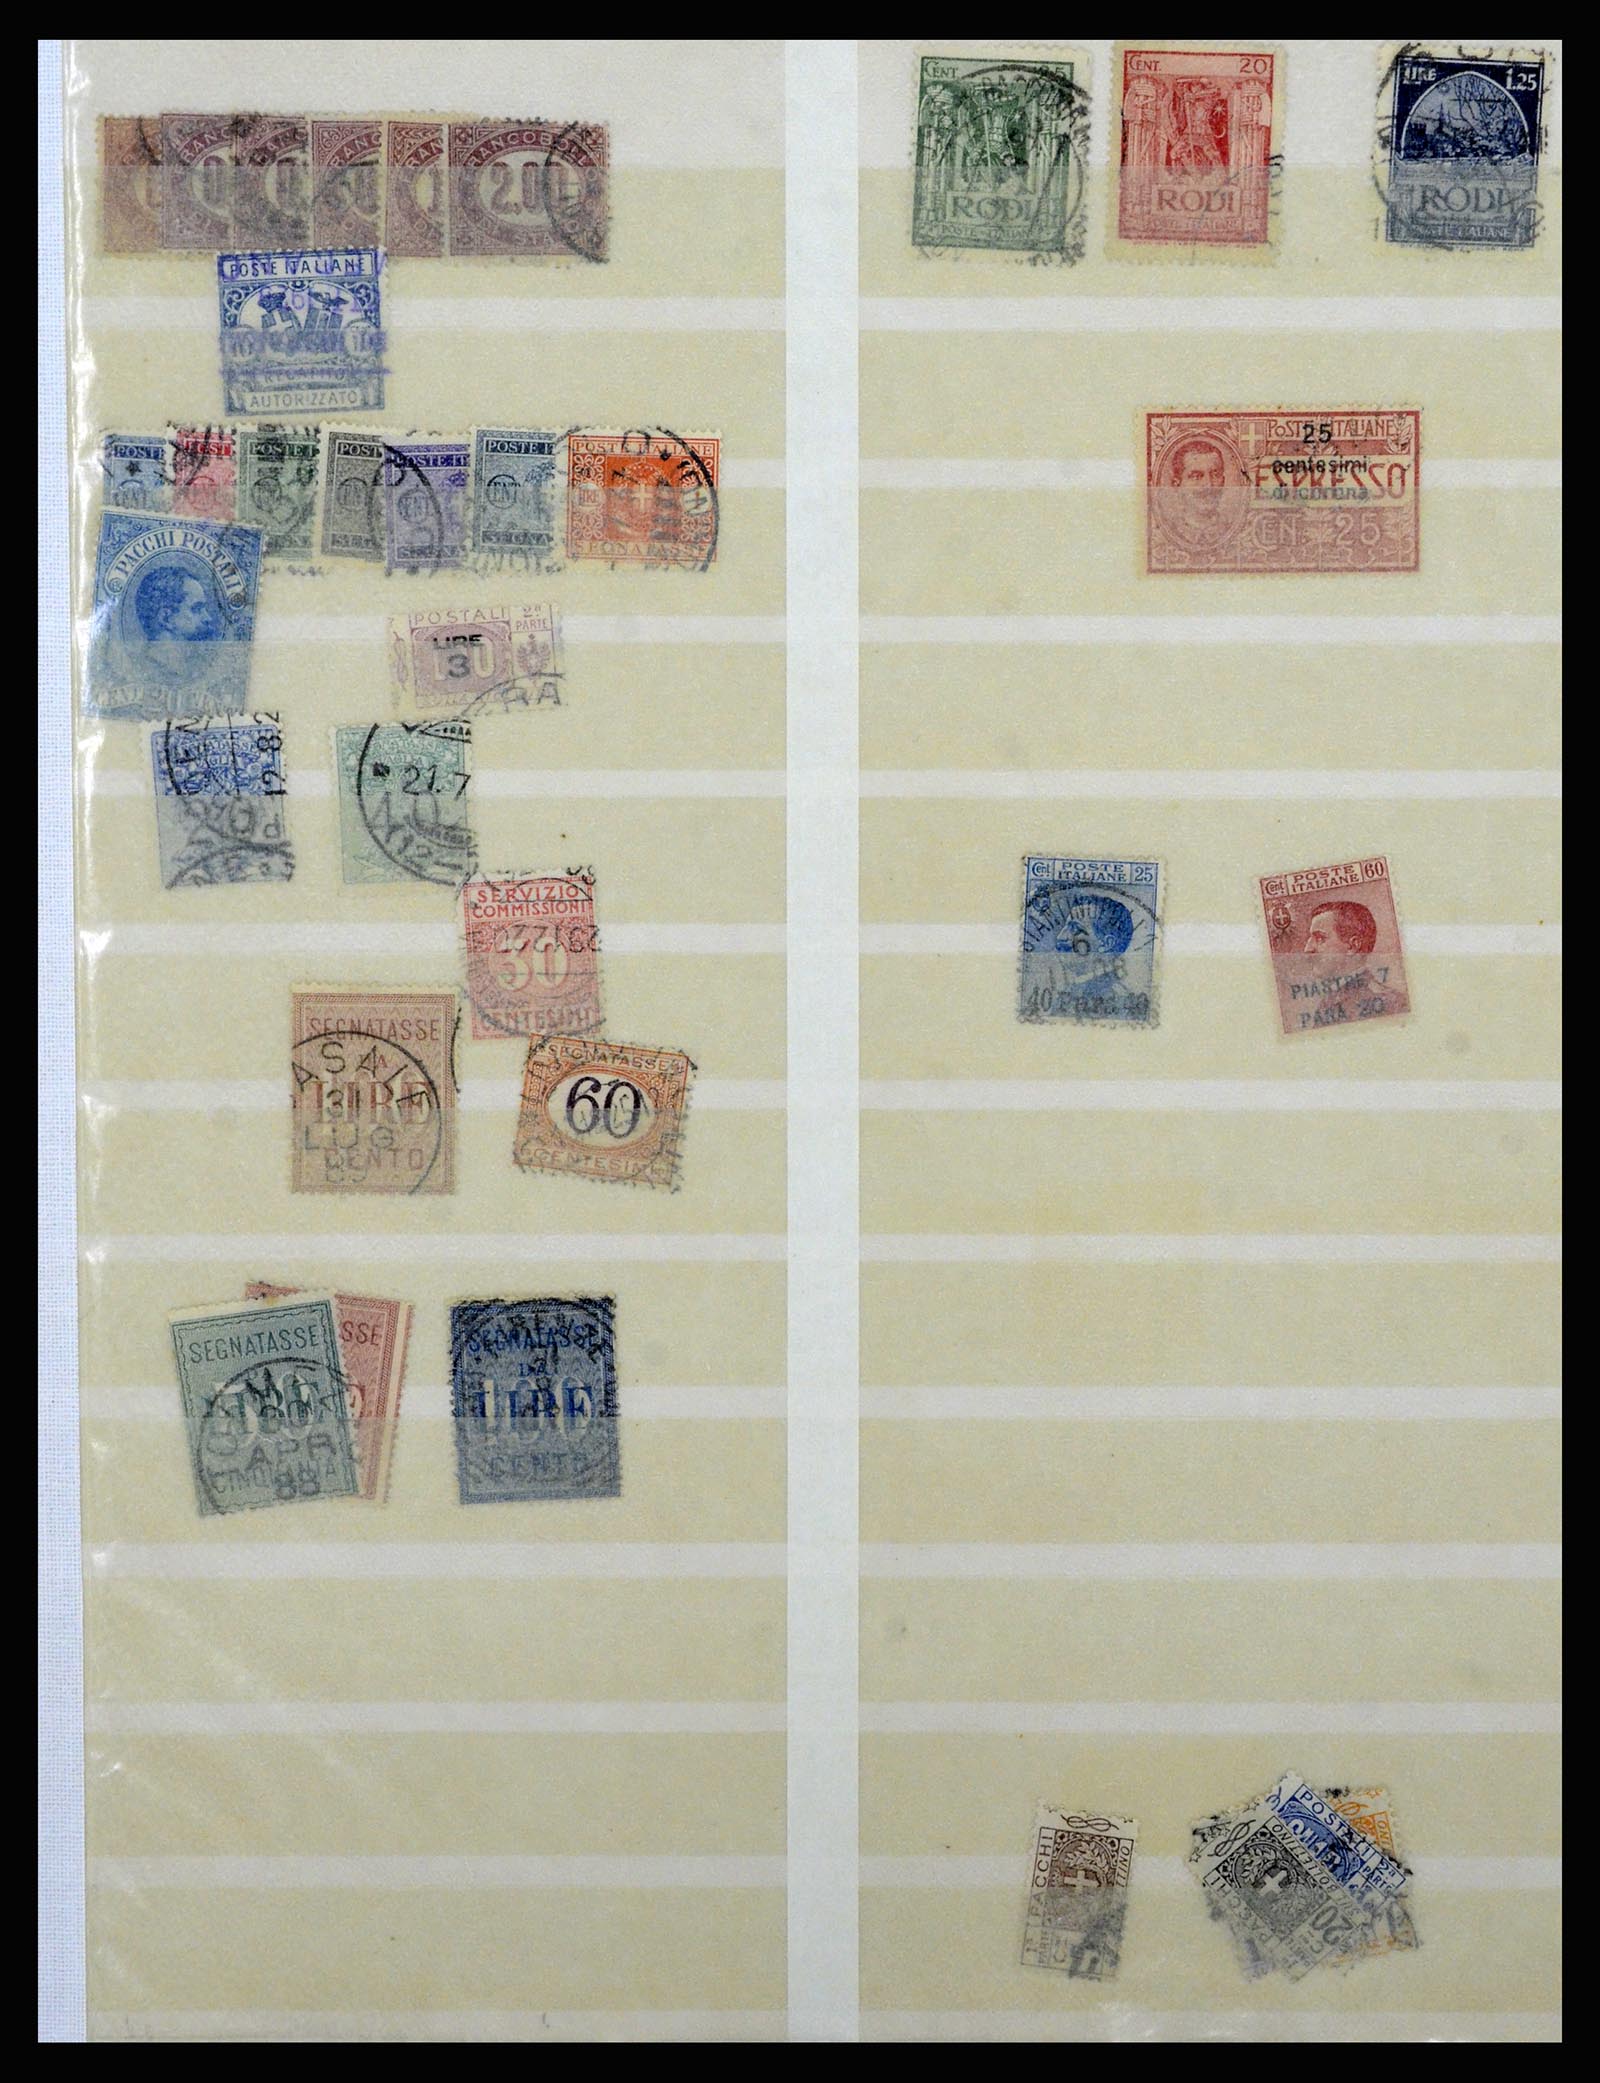 36577 083 - Stamp collection 36577 Italiaanse gebieden 1870-1940.